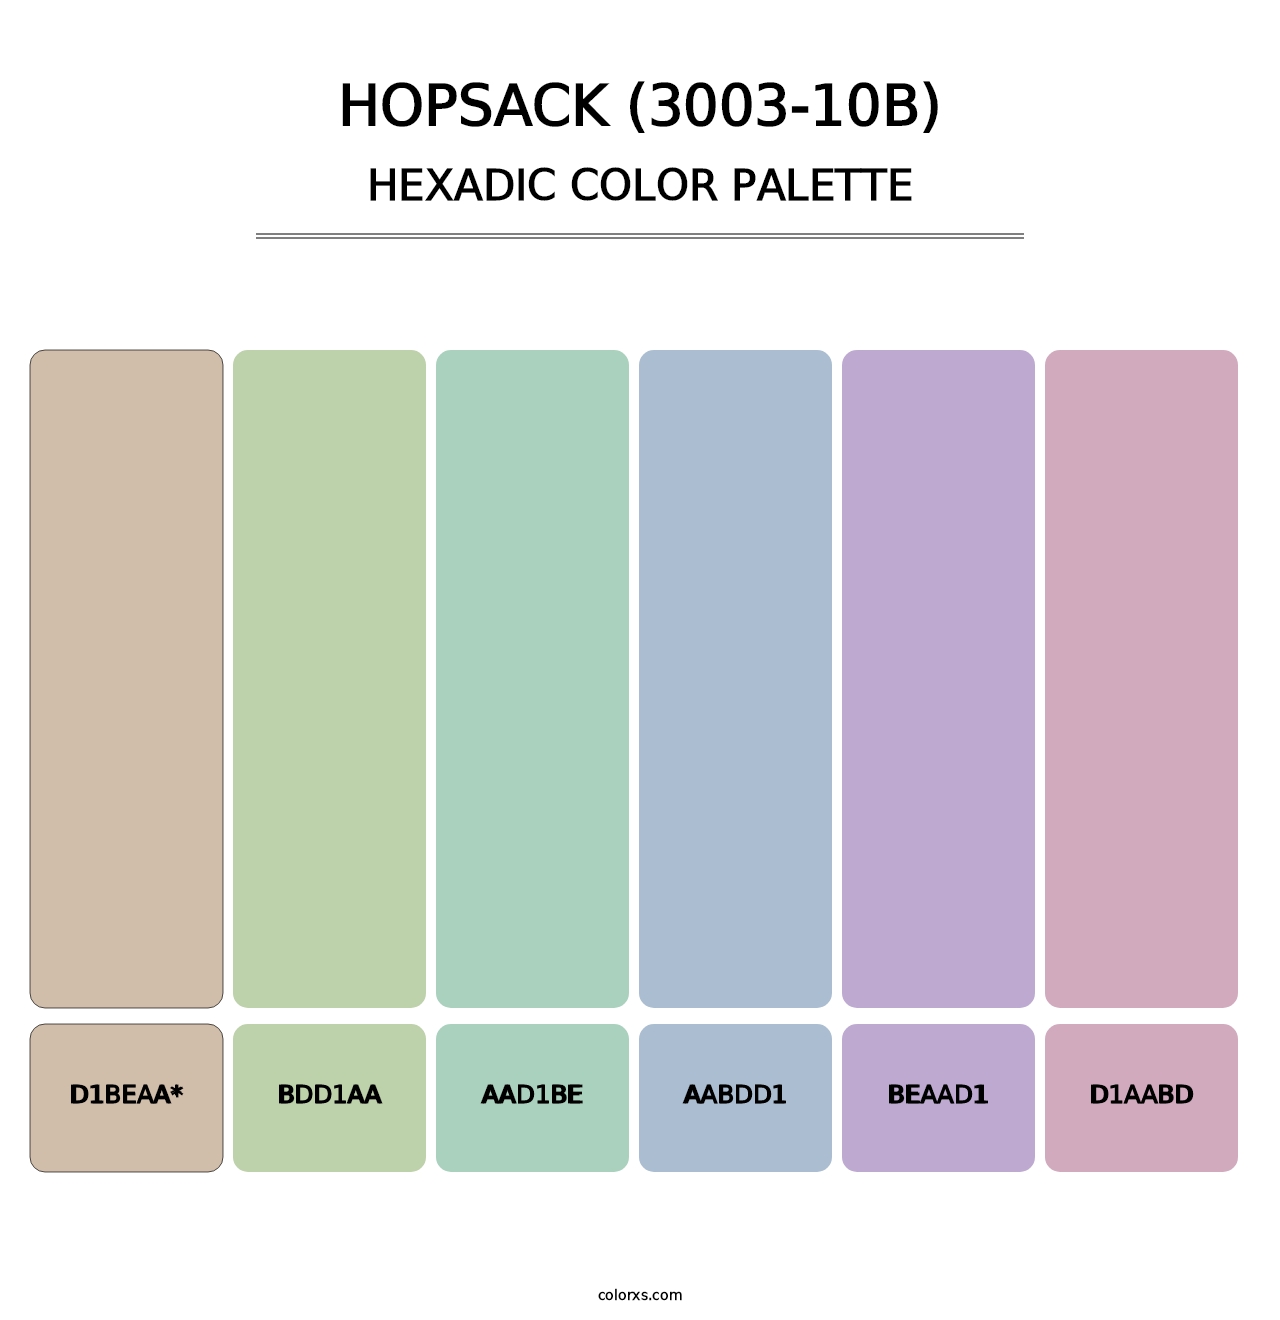 Hopsack (3003-10B) - Hexadic Color Palette